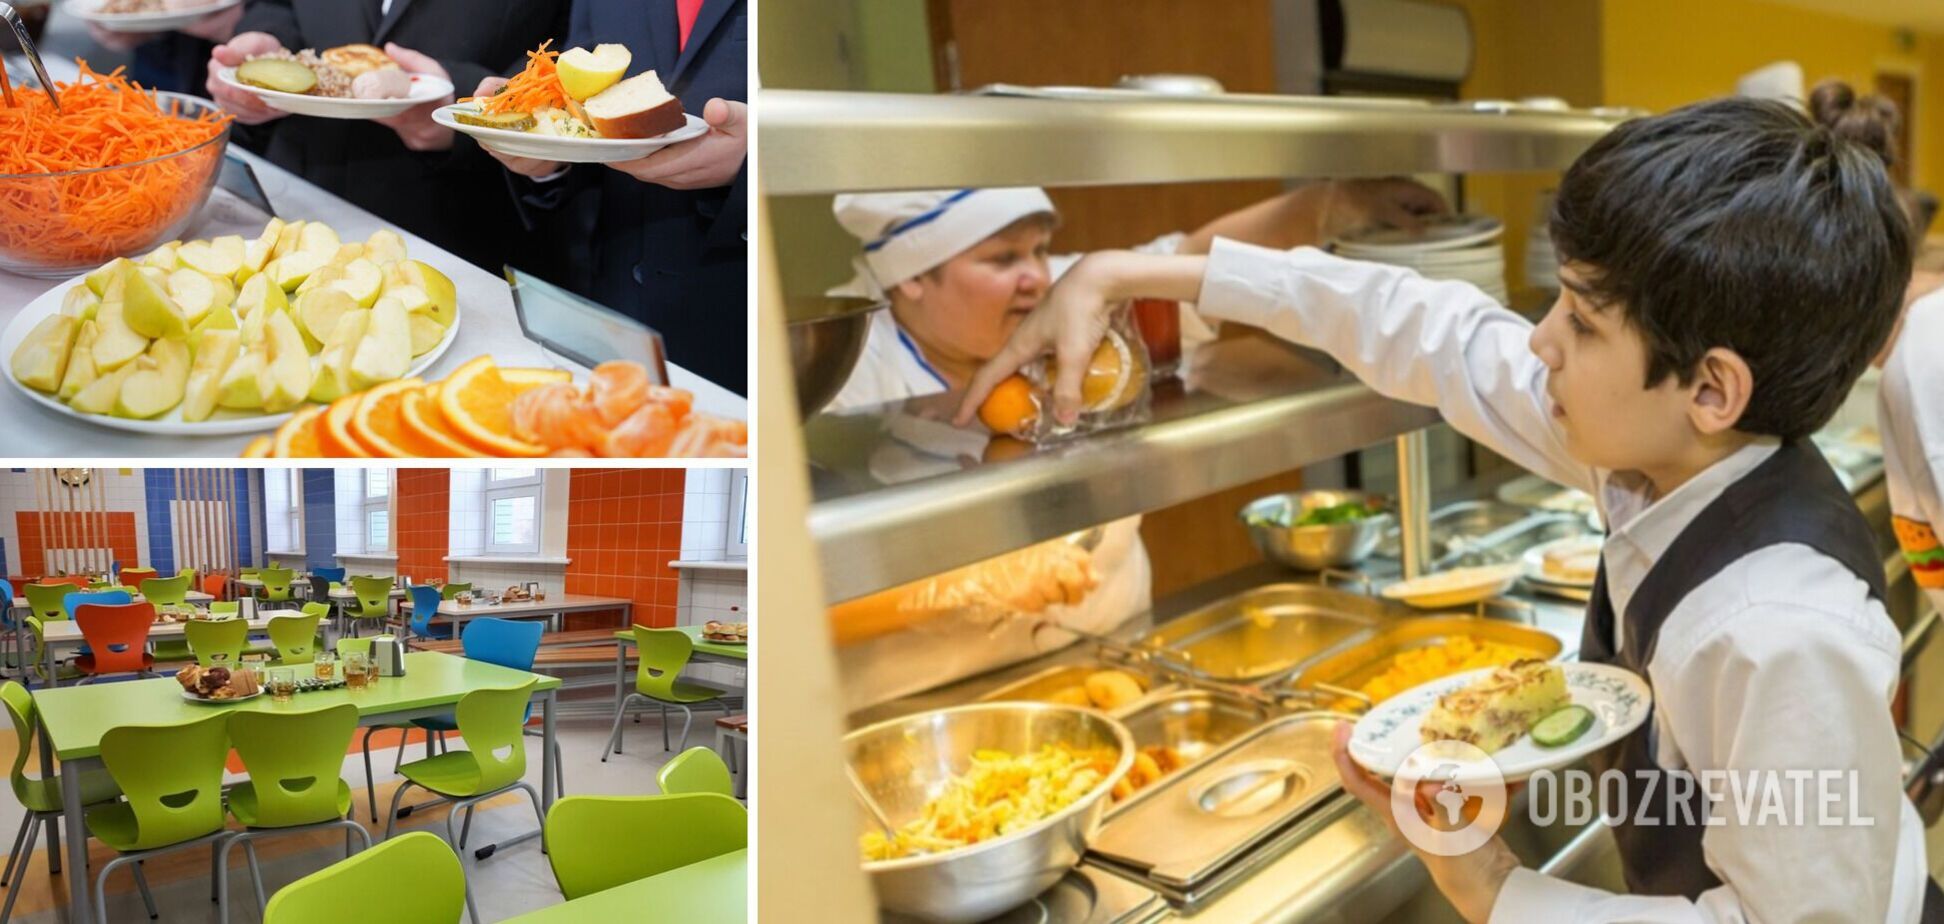 Евгений Клопотенко рассказал, как родители могут решить проблемы с новыми блюдами в школьных столовых